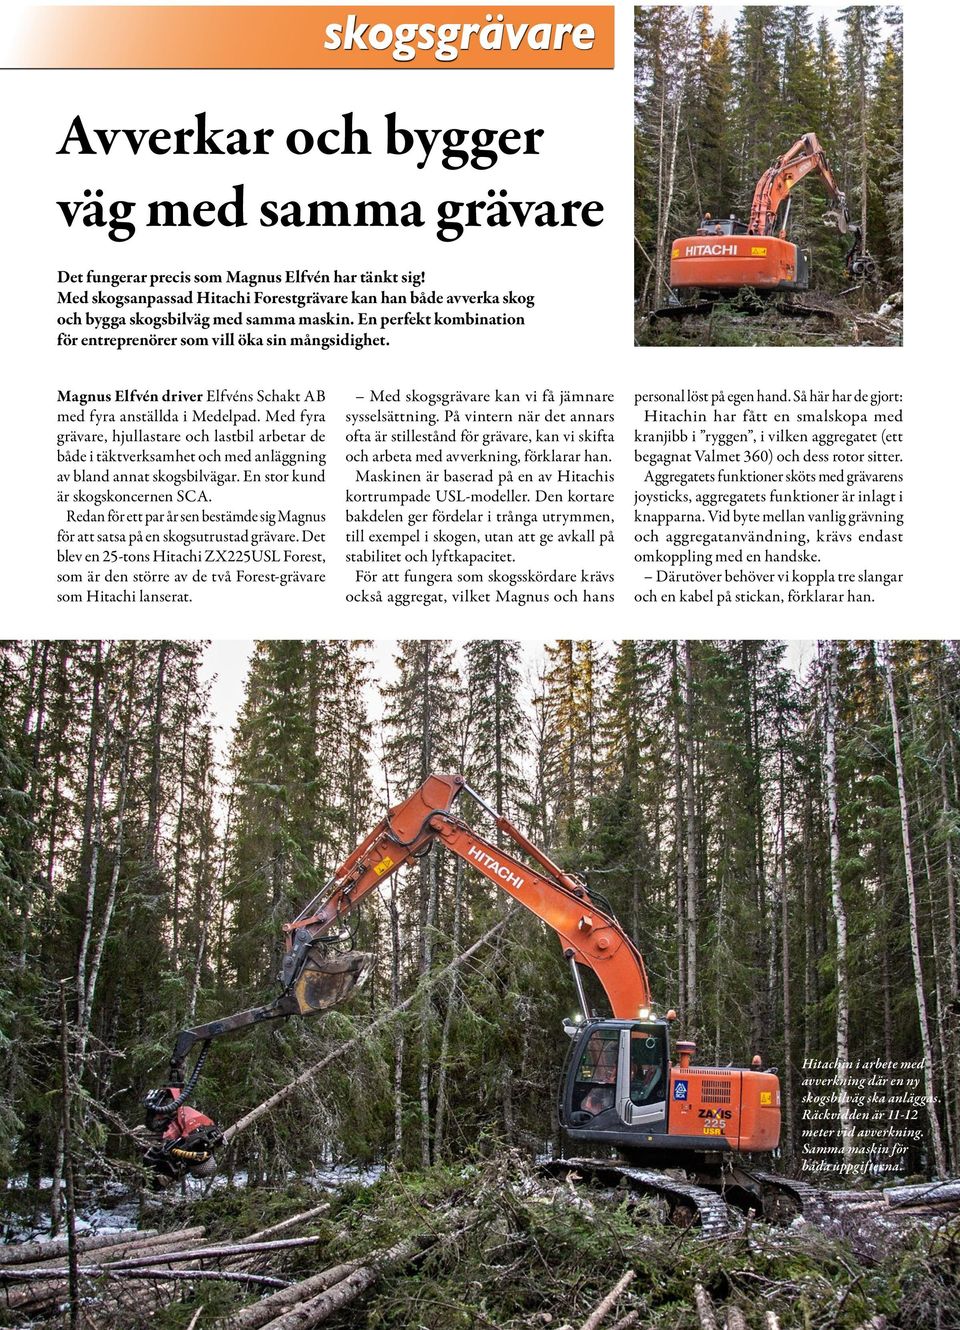 Magnus Elfvén driver Elfvéns Schakt AB med fyra anställda i Medelpad. Med fyra grävare, hjullastare och lastbil arbetar de både i täktverksamhet och med anläggning av bland annat skogsbilvägar.